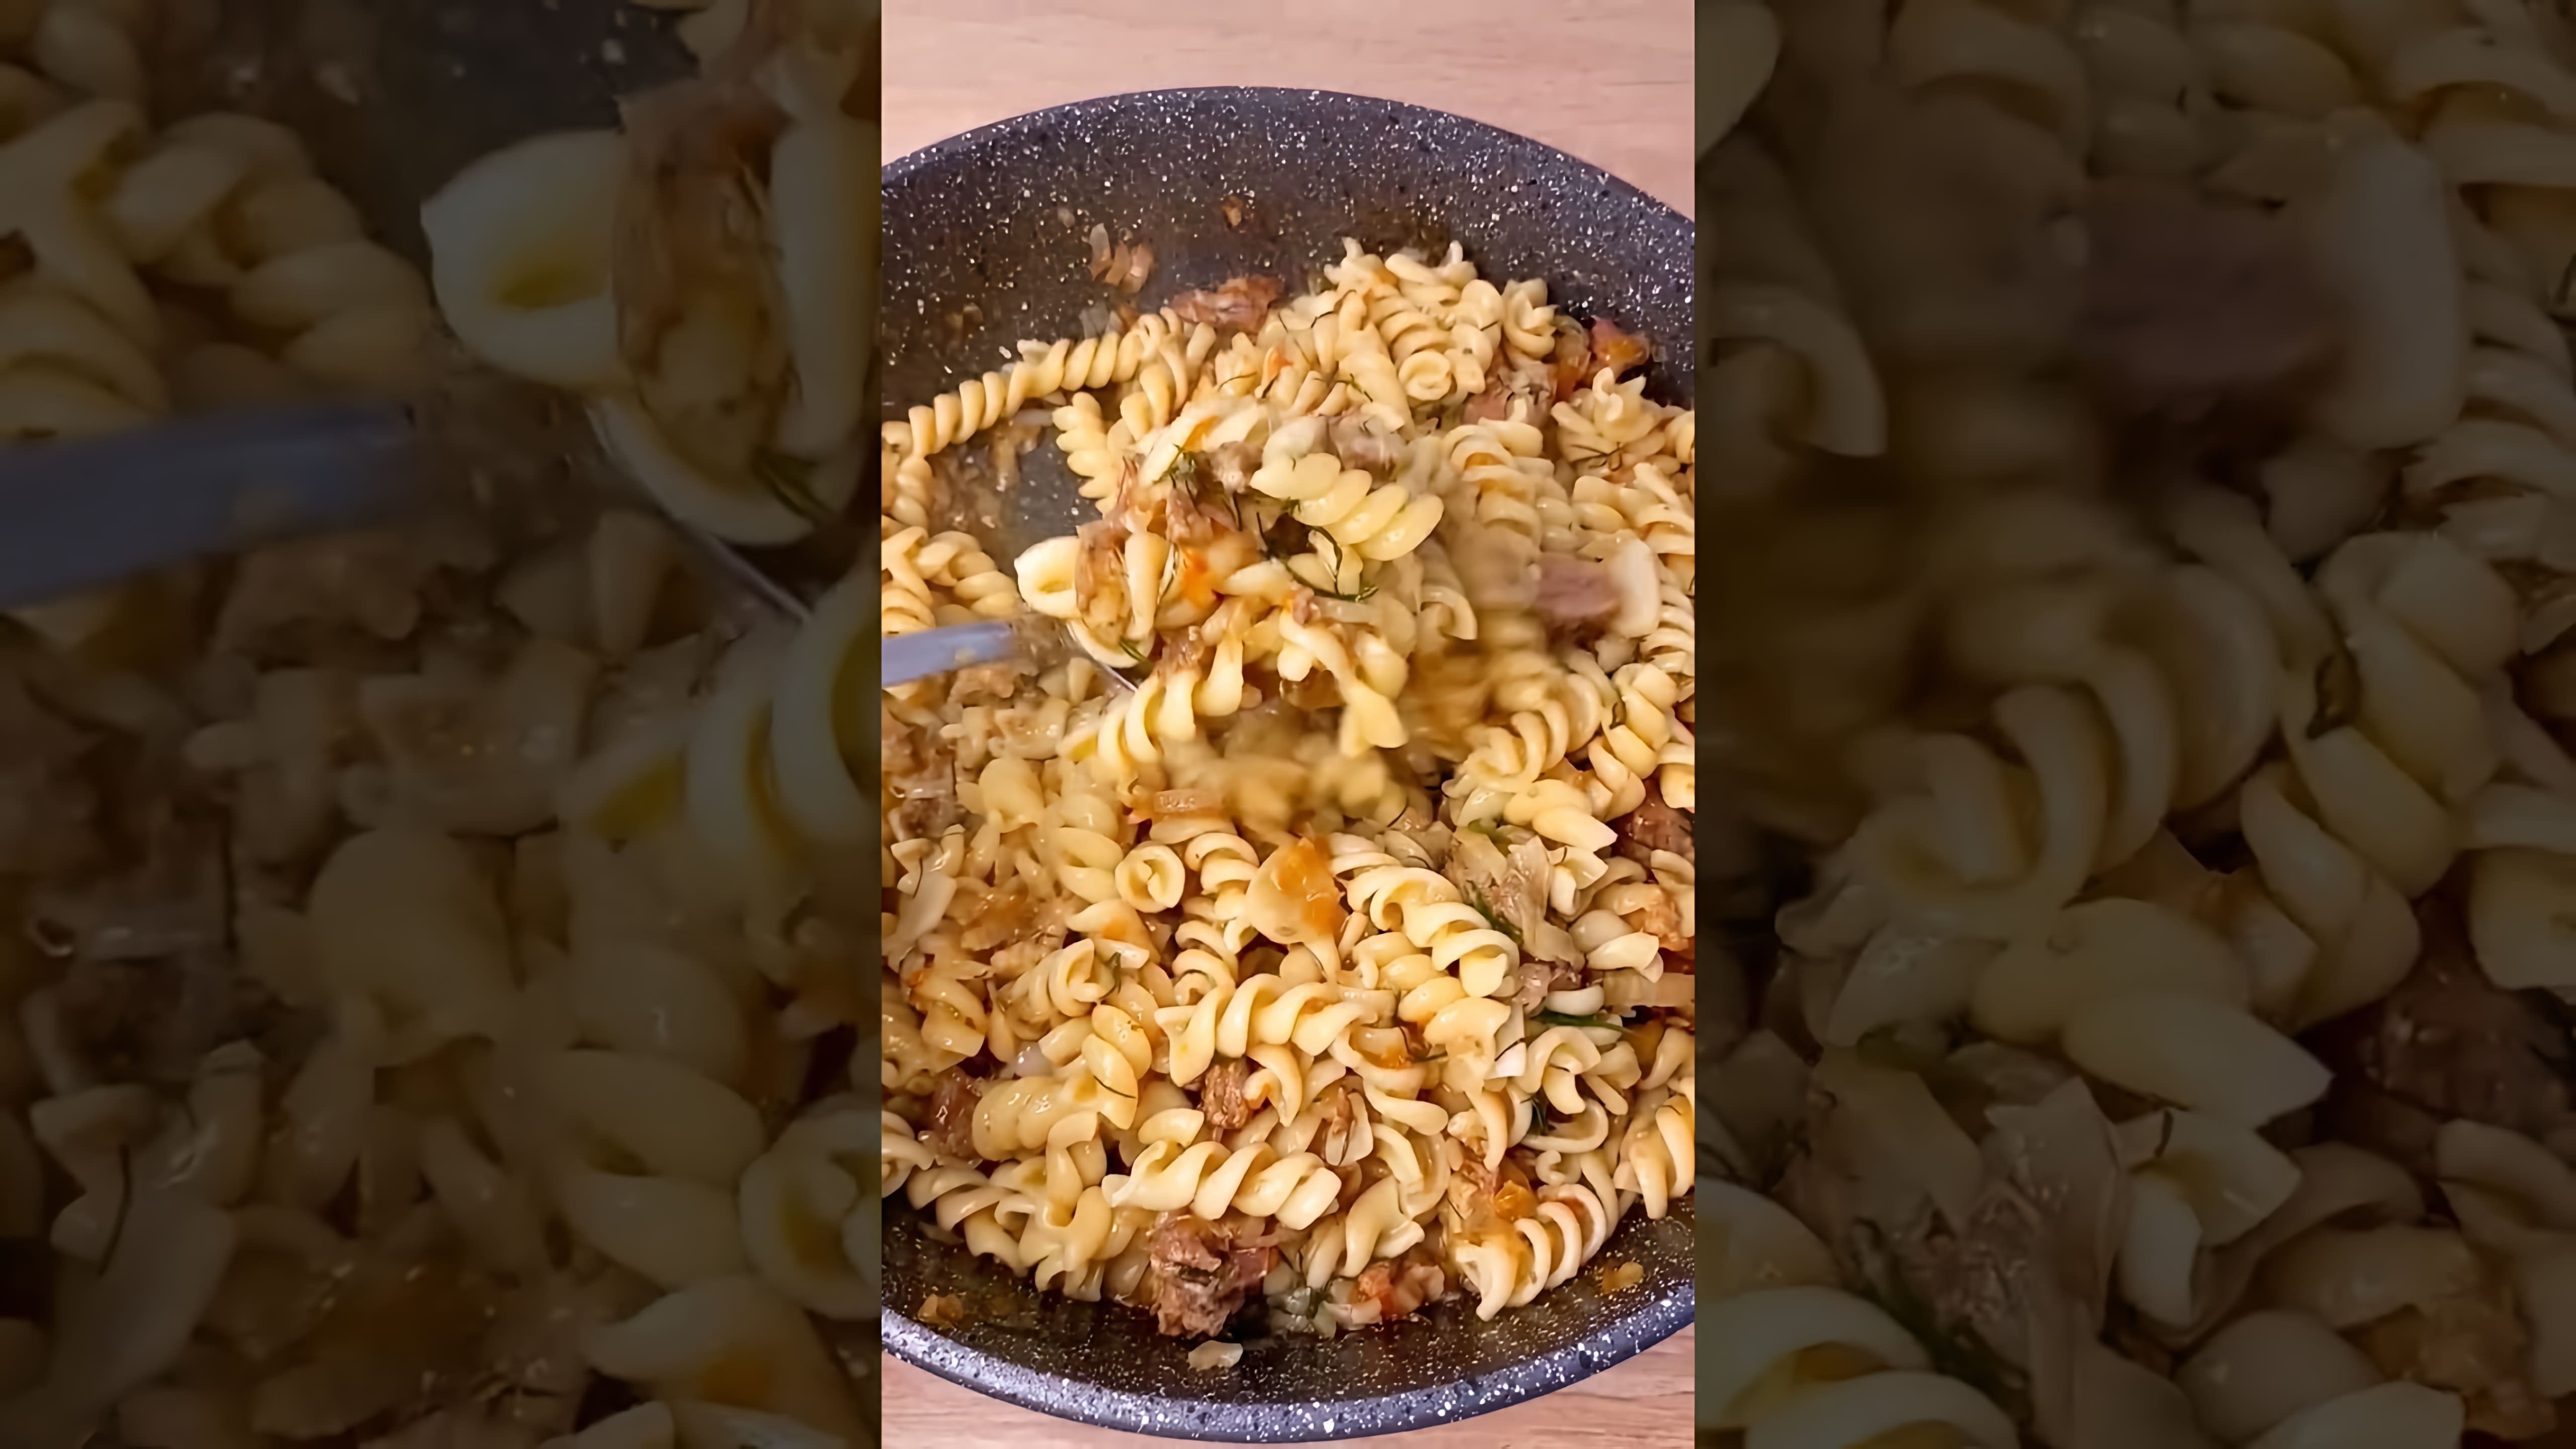 В этом видео демонстрируется процесс приготовления макарон с тушенкой